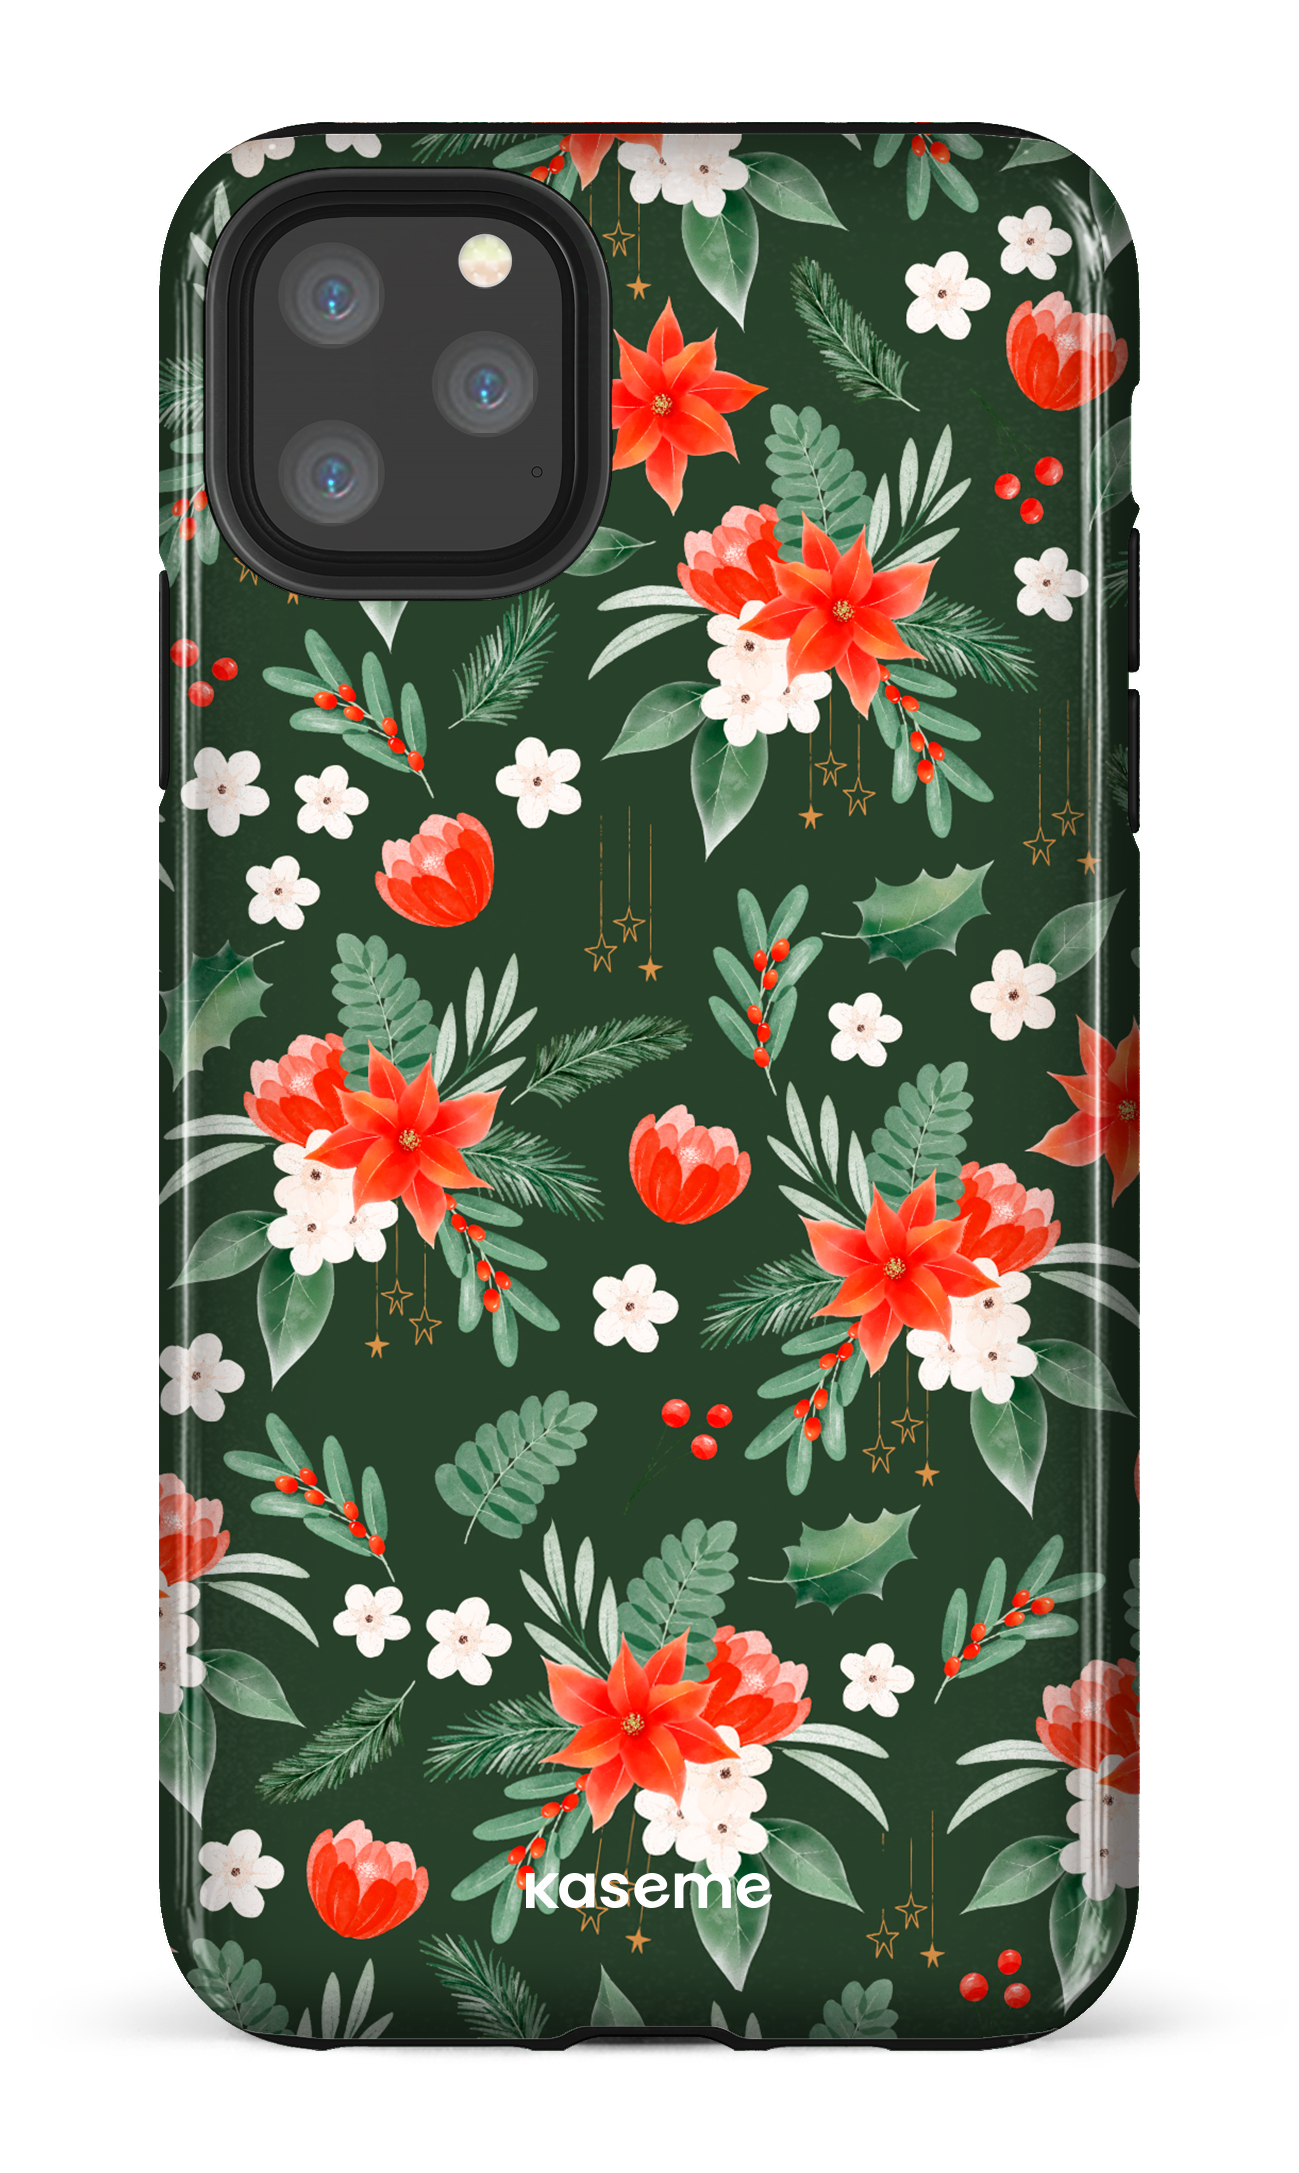 Poinsettia - iPhone 11 Pro Max